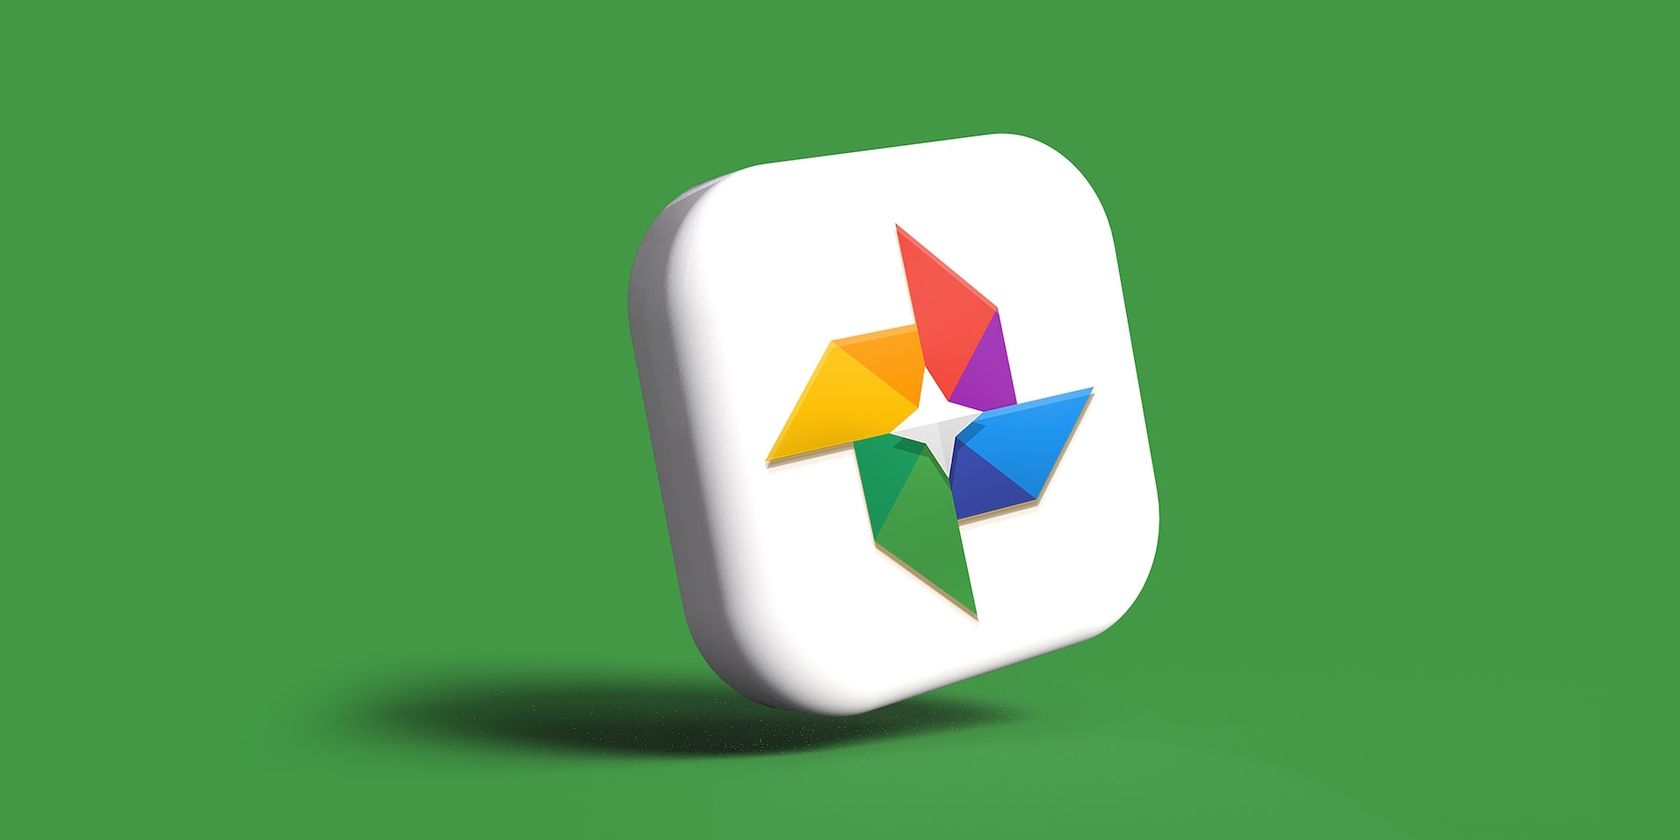 Icône Google Photos en 3D